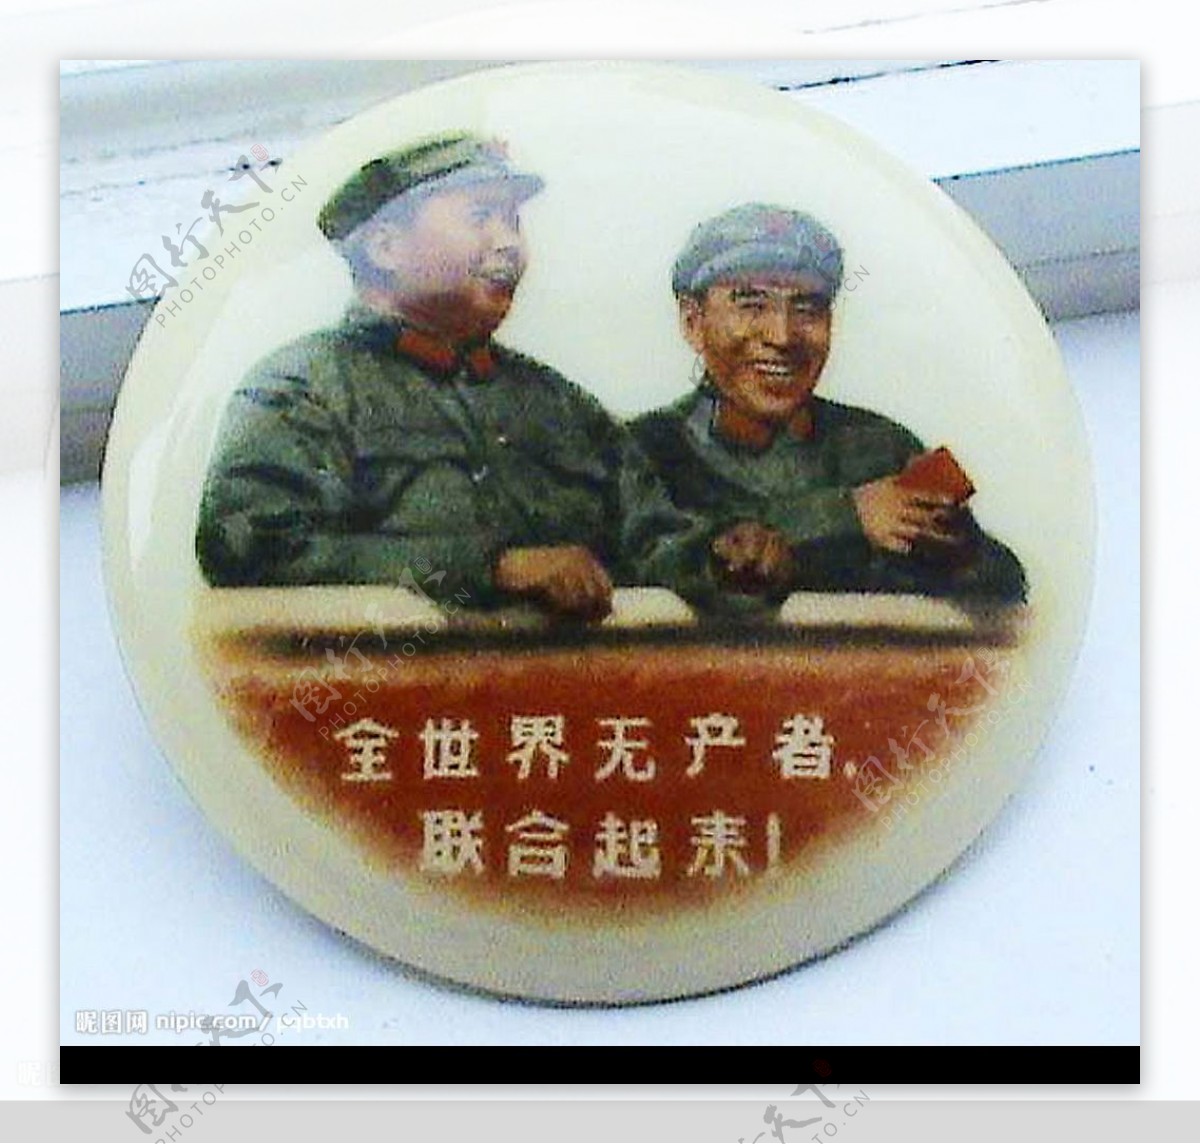 难得一见的毛主席和林彪合影像章图片